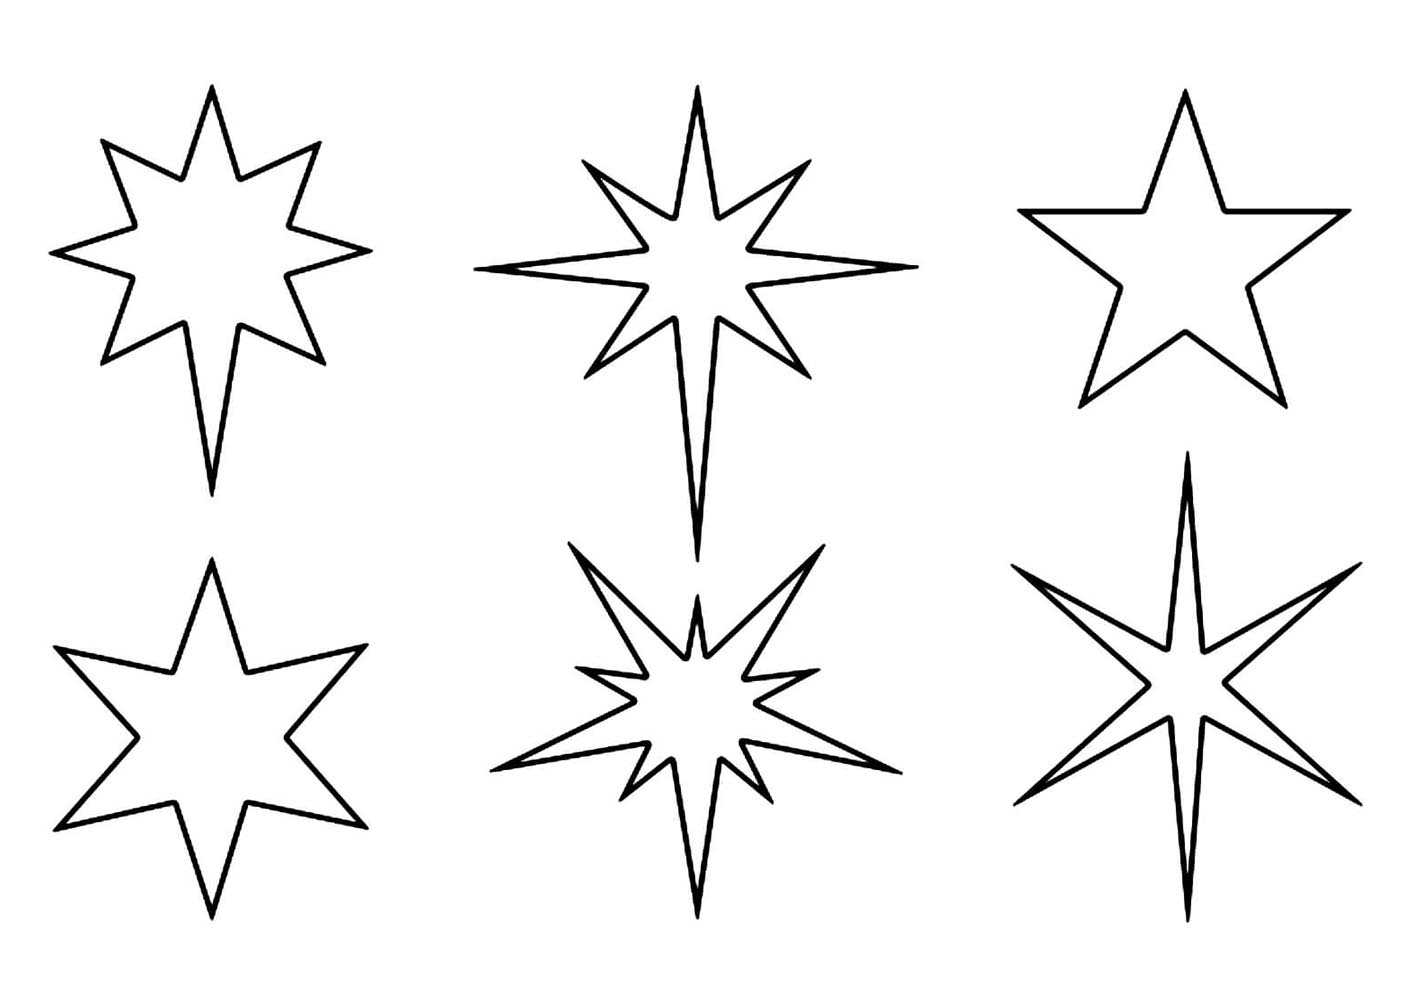 Трафареты для вырезания из бумаги (распечатать а4): шаблоны 2019/2020 новогодние, бабочки, снеговики, красивые звезды